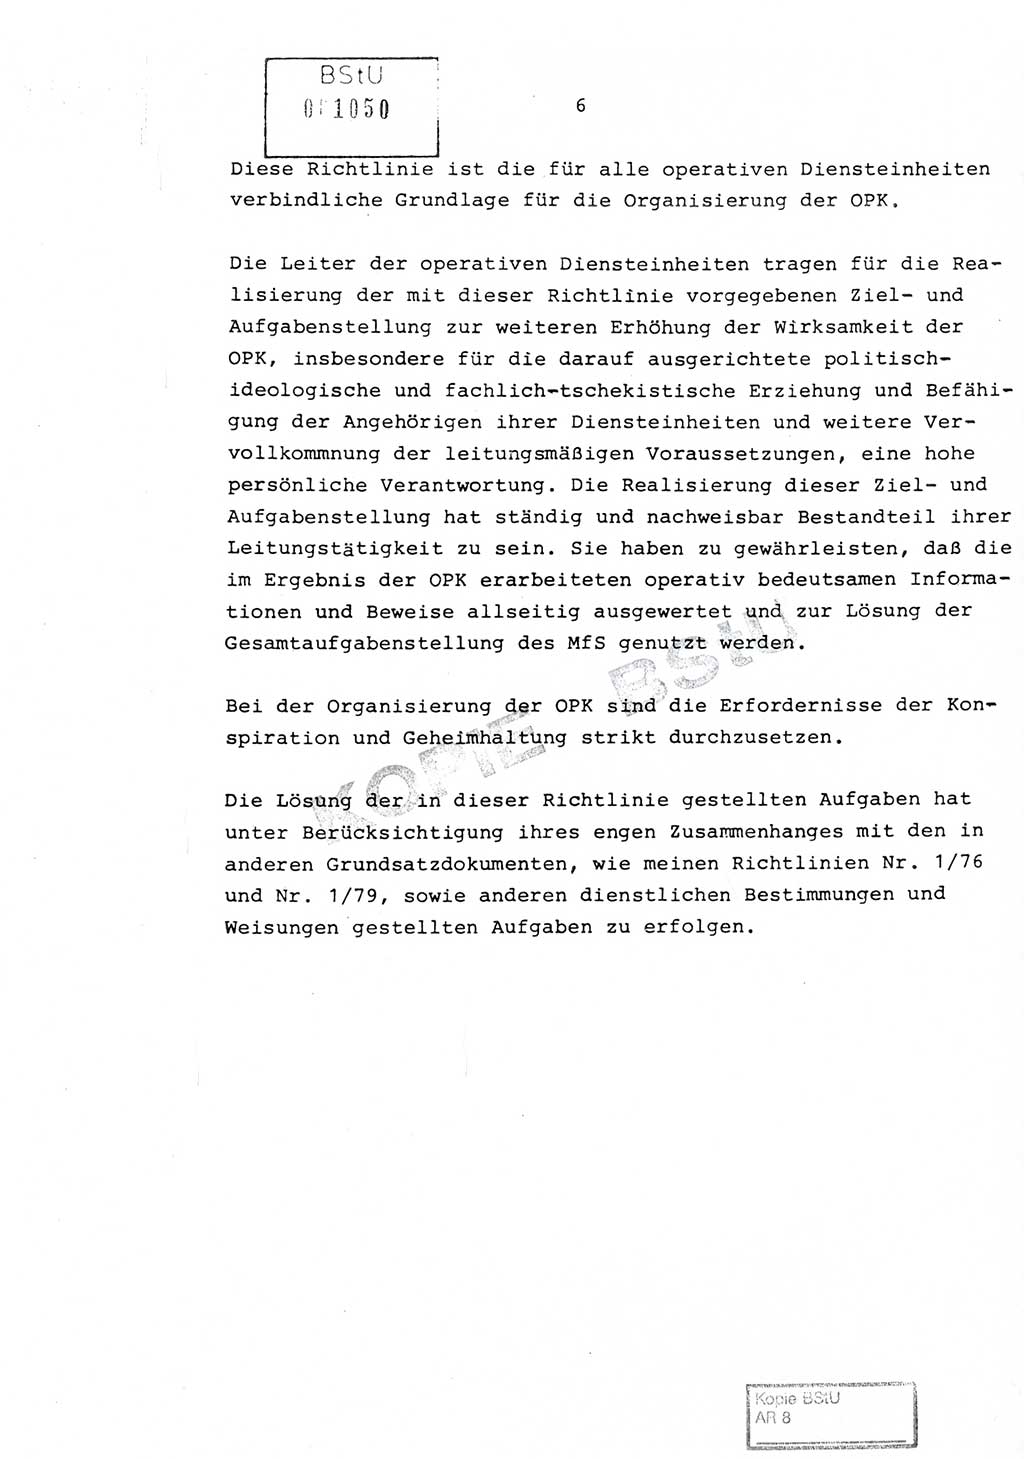 Richtlinie Nr. 1/81 über die operative Personenkontrolle (OPK), Ministerium für Staatssicherheit (MfS) [Deutsche Demokratische Republik (DDR)], Der Minister, Geheime Verschlußsache (GVS) ooo8-10/81, Berlin 1981, Blatt 6 (RL 1/81 OPK DDR MfS Min. GVS ooo8-10/81 1981, Bl. 6)